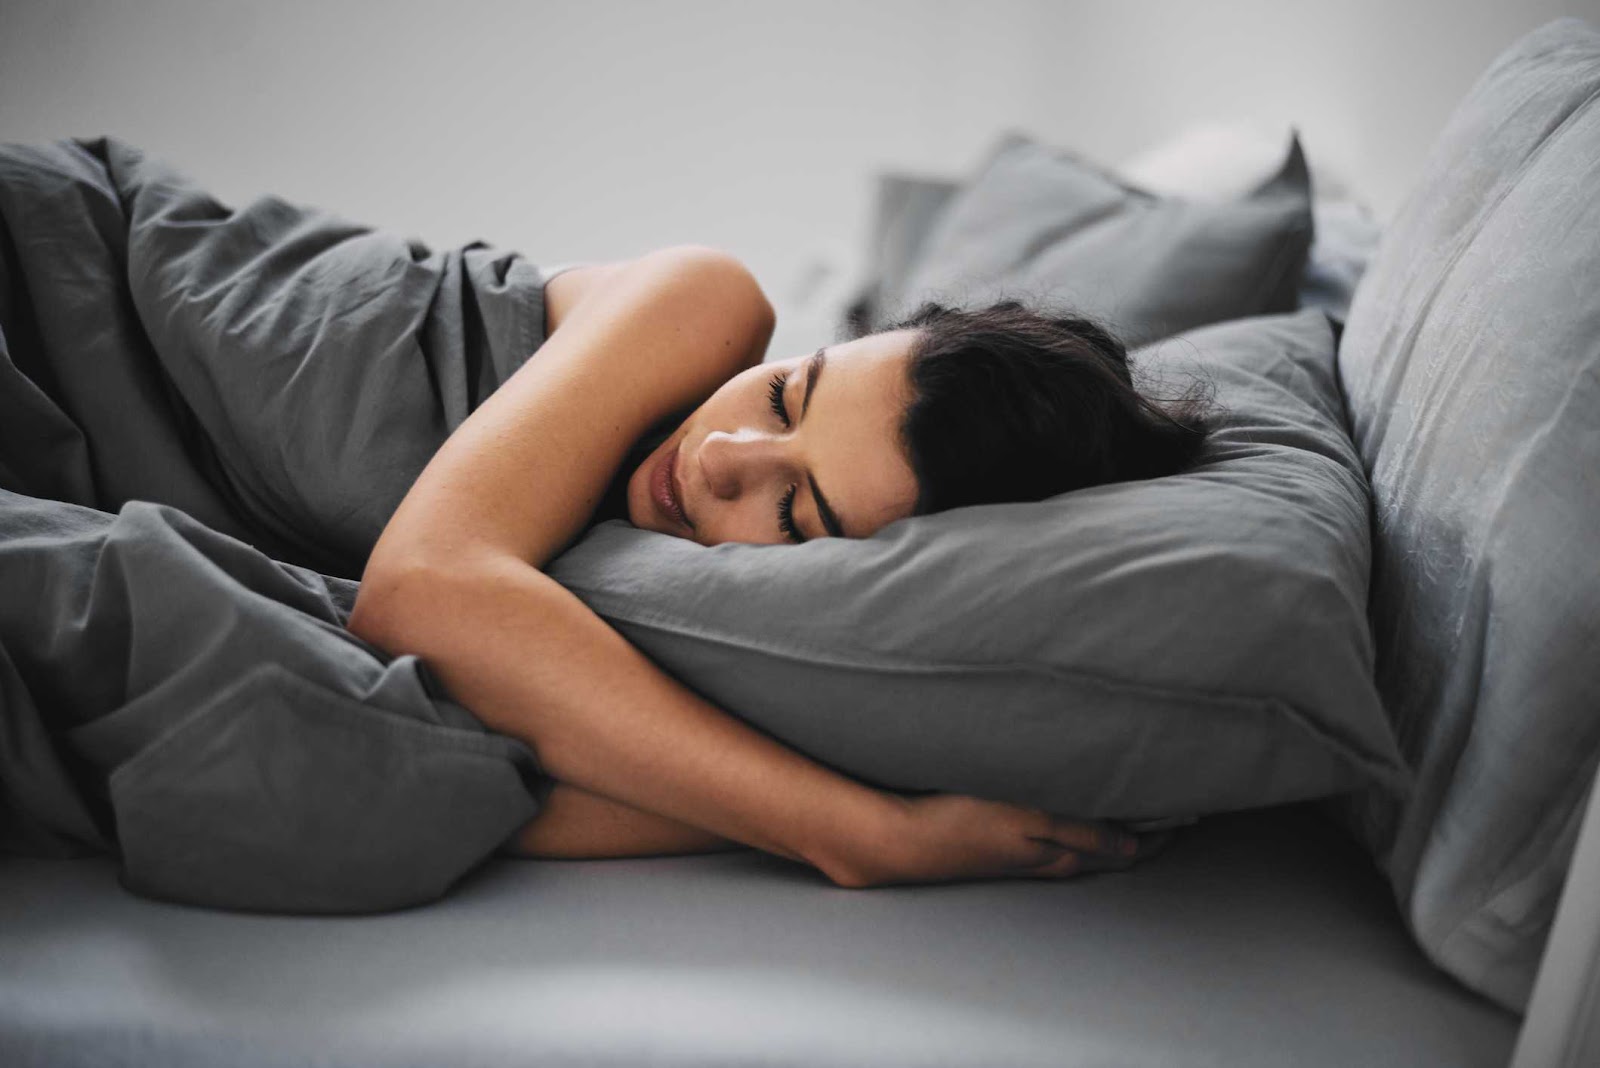  Ngủ giúp não hoạt động nhanh hơn